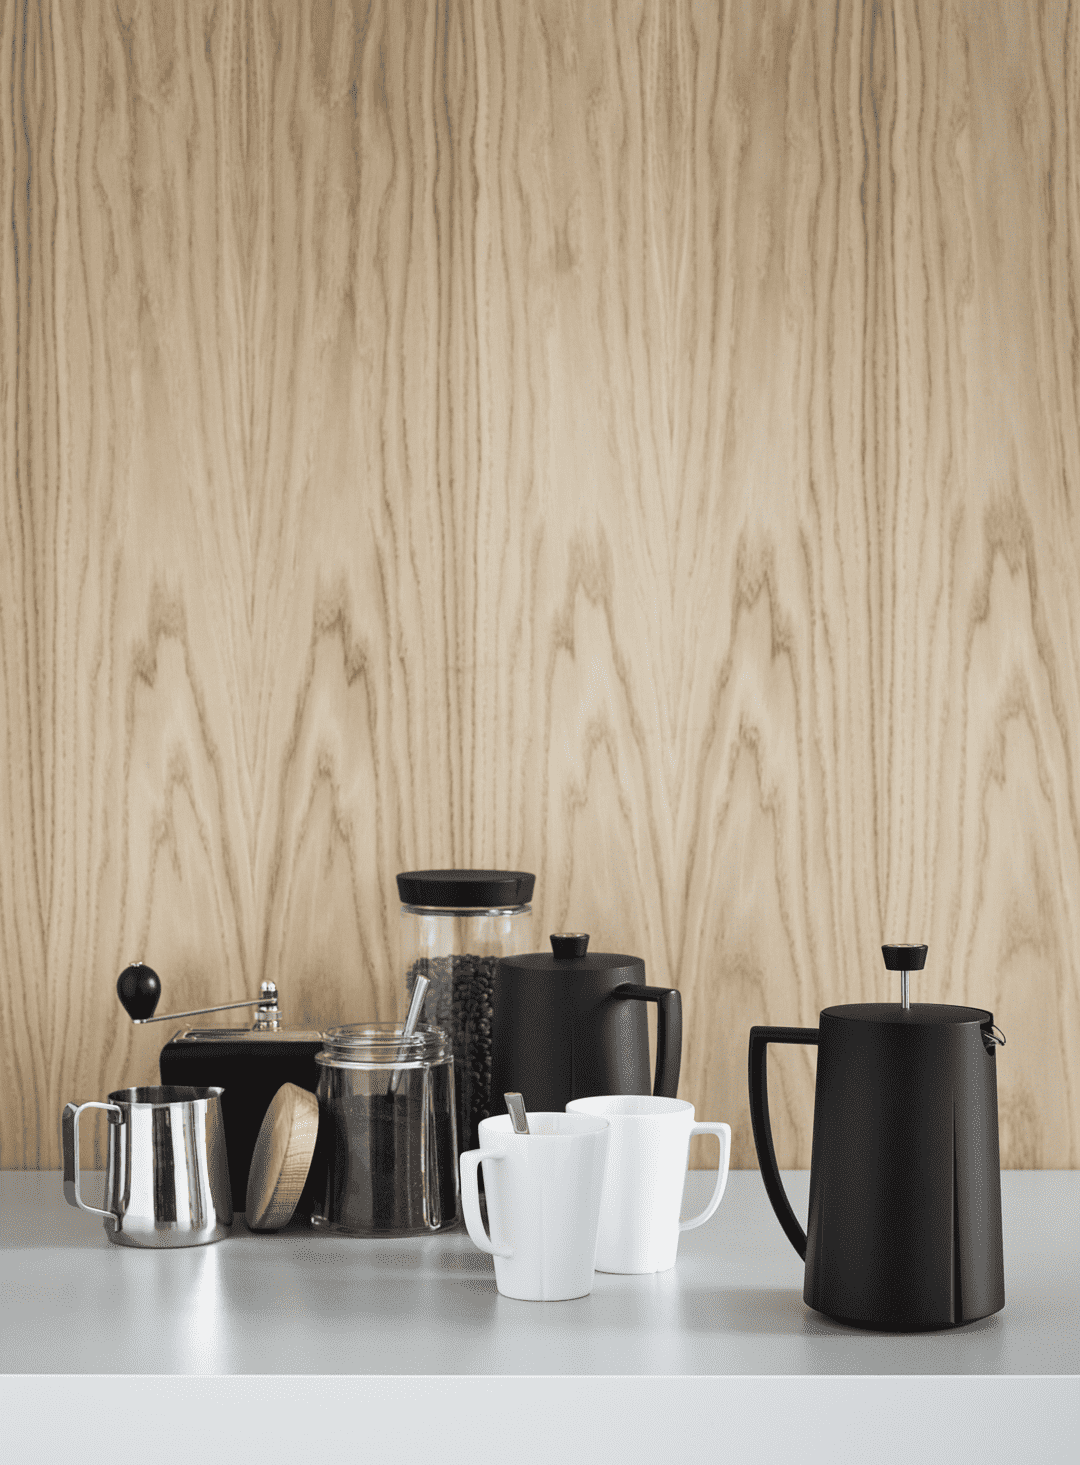 Rosendahl Grand Cru Coffee Plunger 1,0 l Black